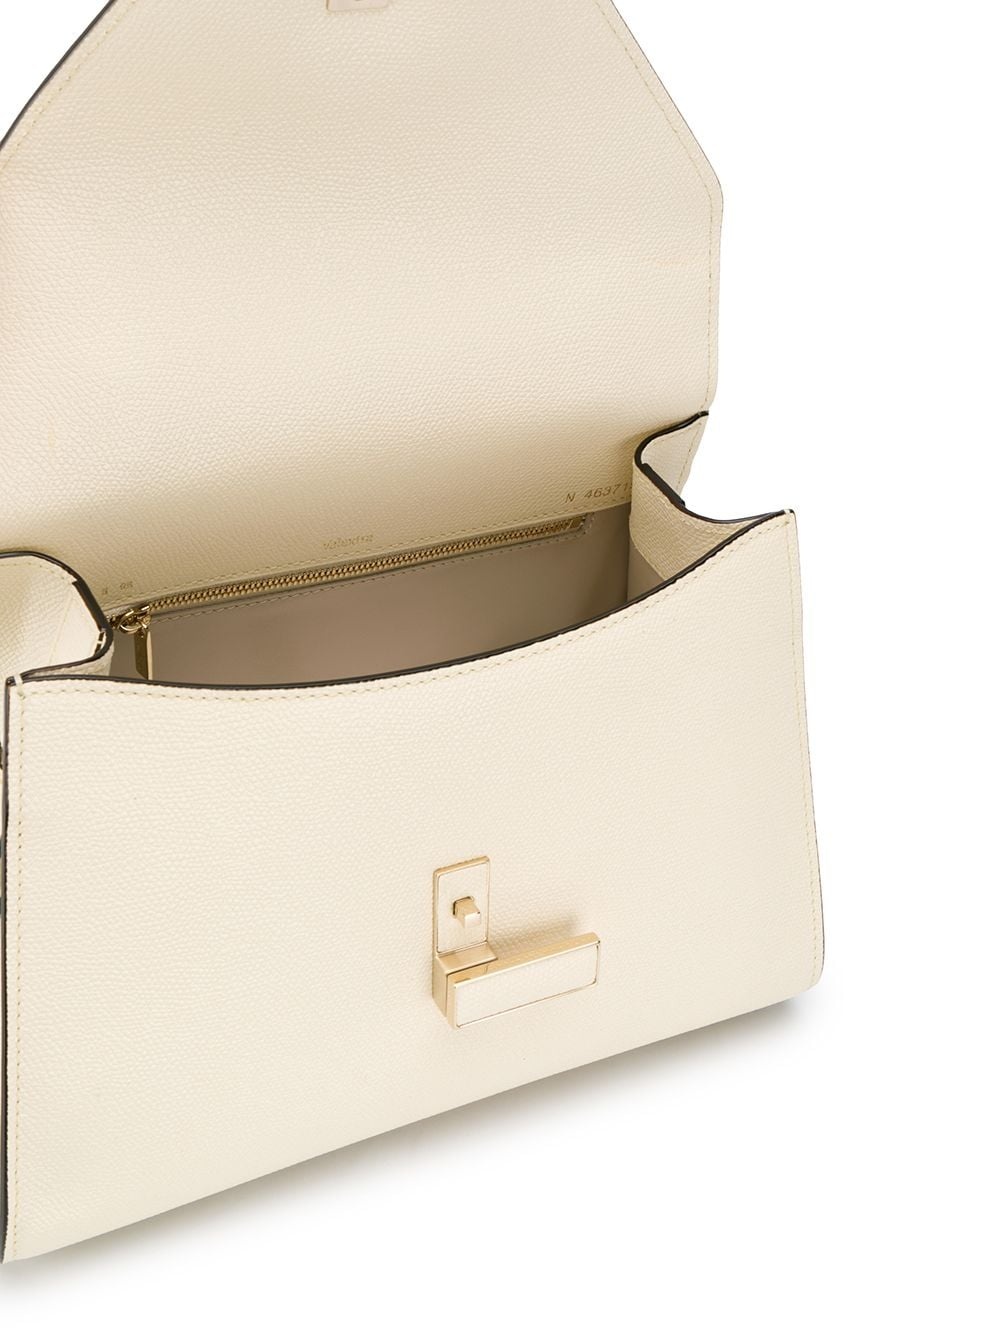 Iside medium leather handbag - 5